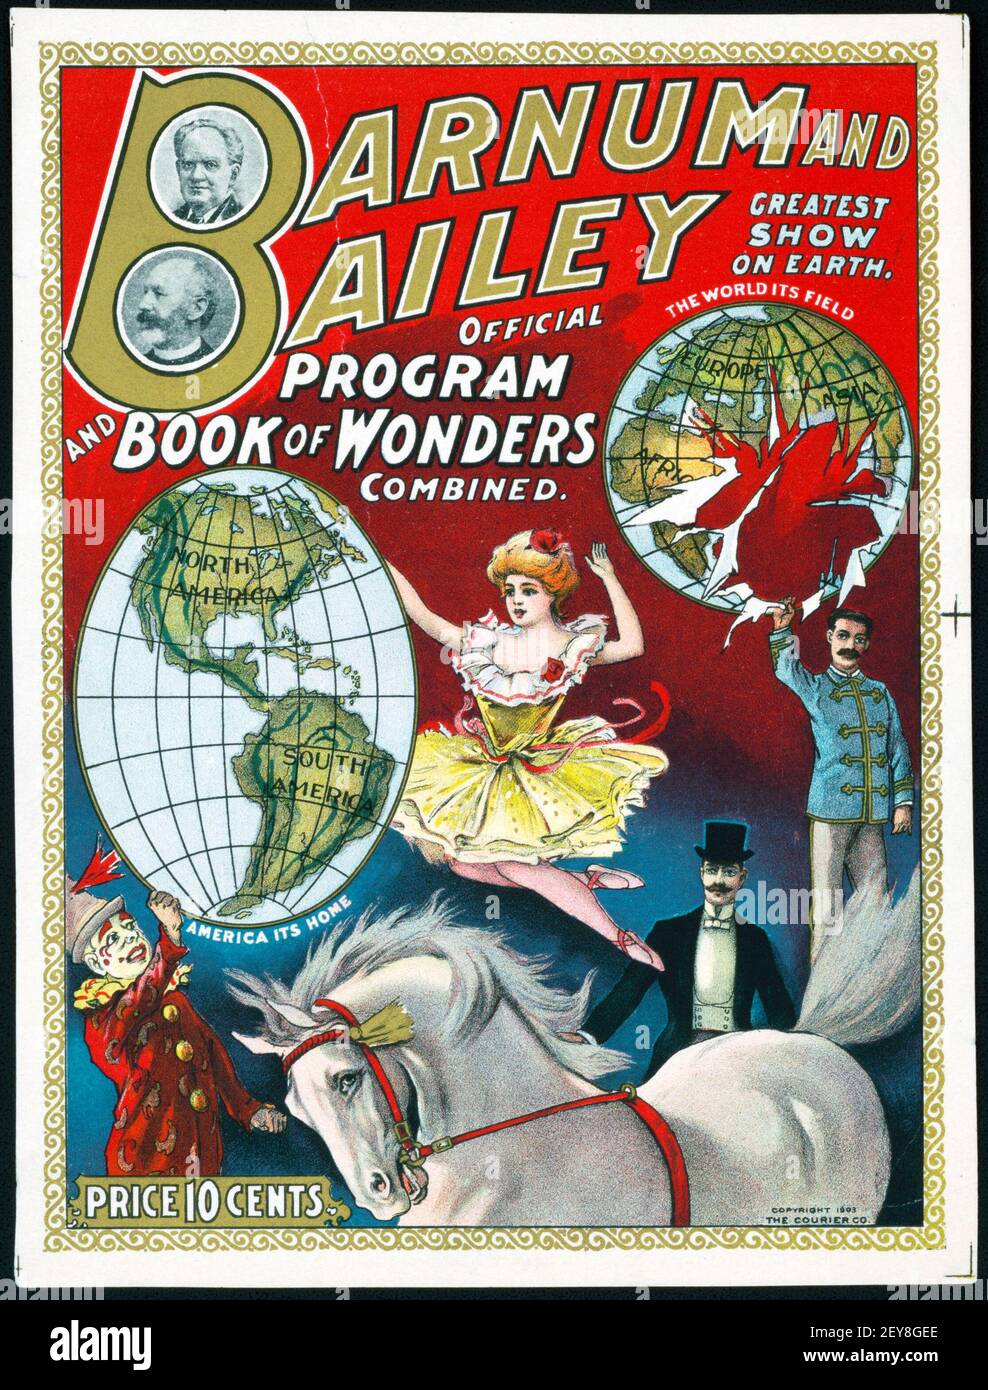 Die Barnum & Bailey Greatest Show auf Erden. Programm und Buch der Wunder kombiniert. Courier Litho Co., c 1903. Stockfoto